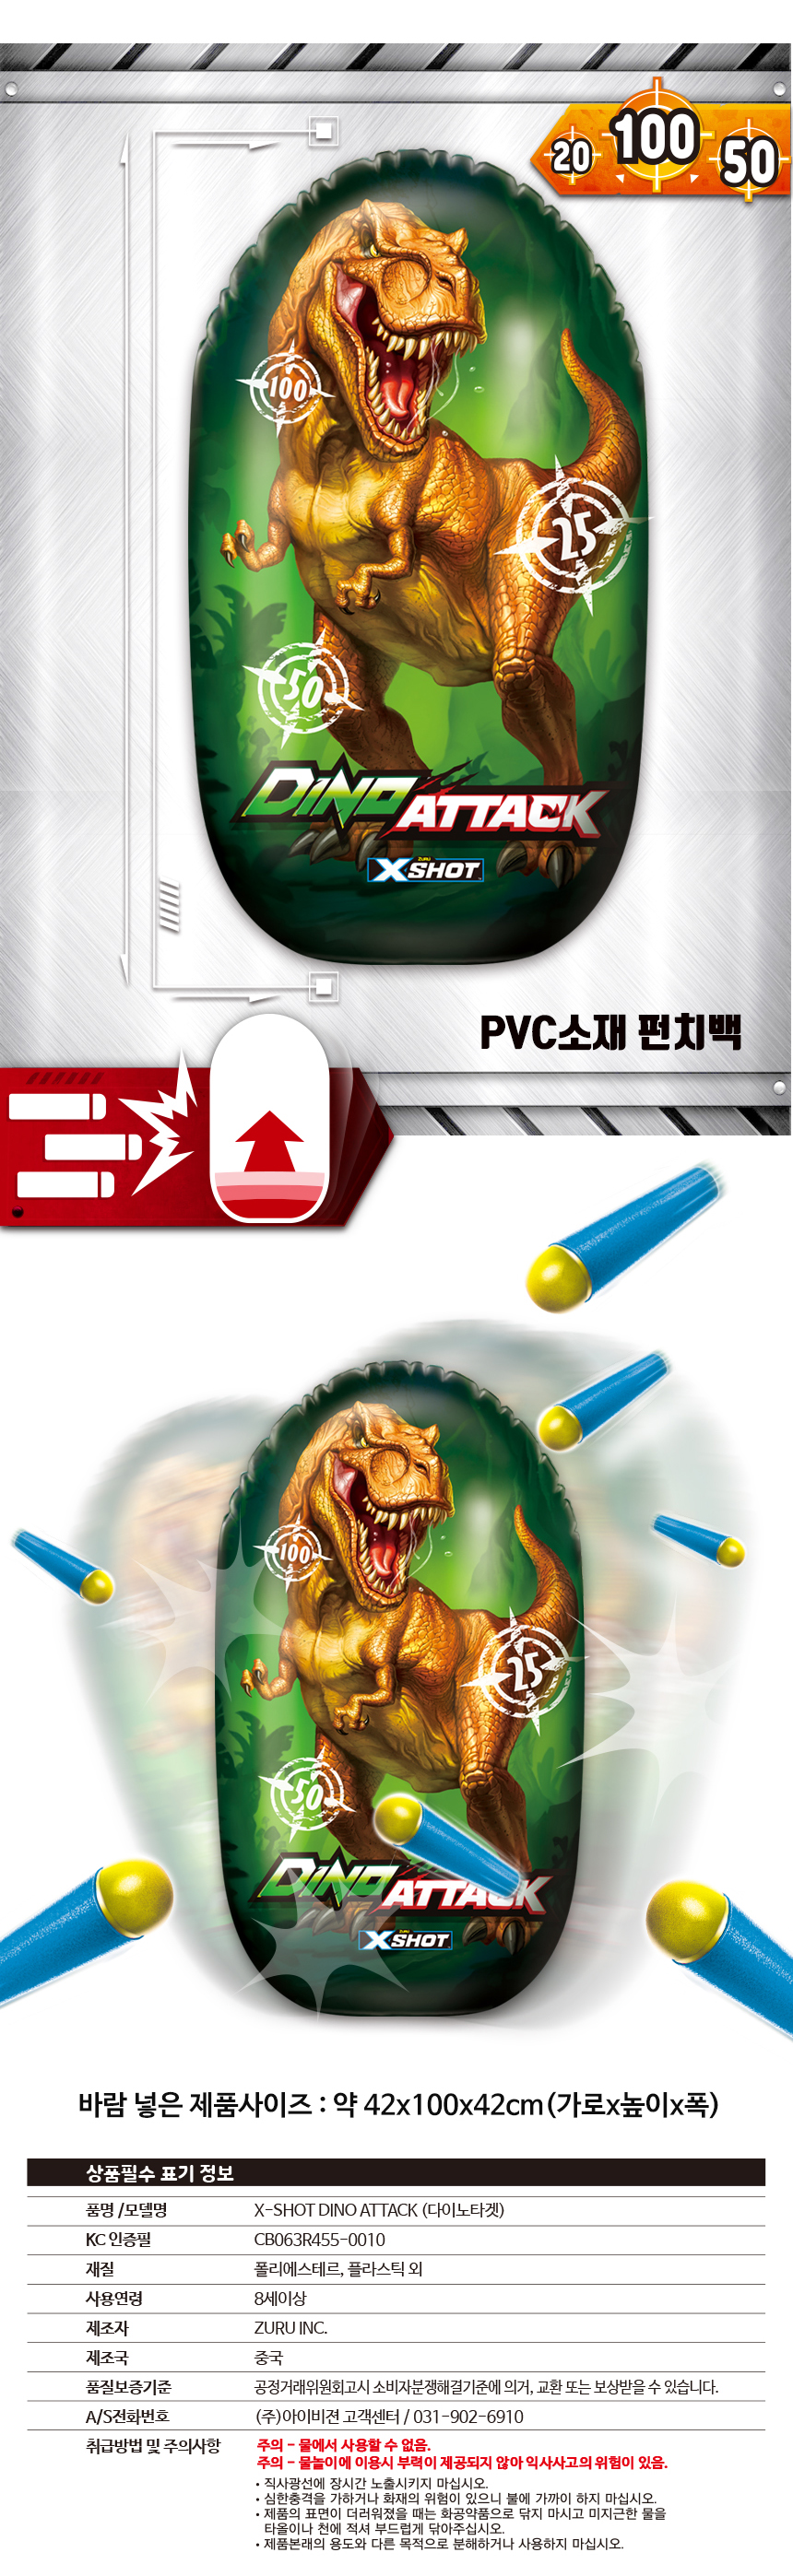 Dinoattack_Target3.jpg